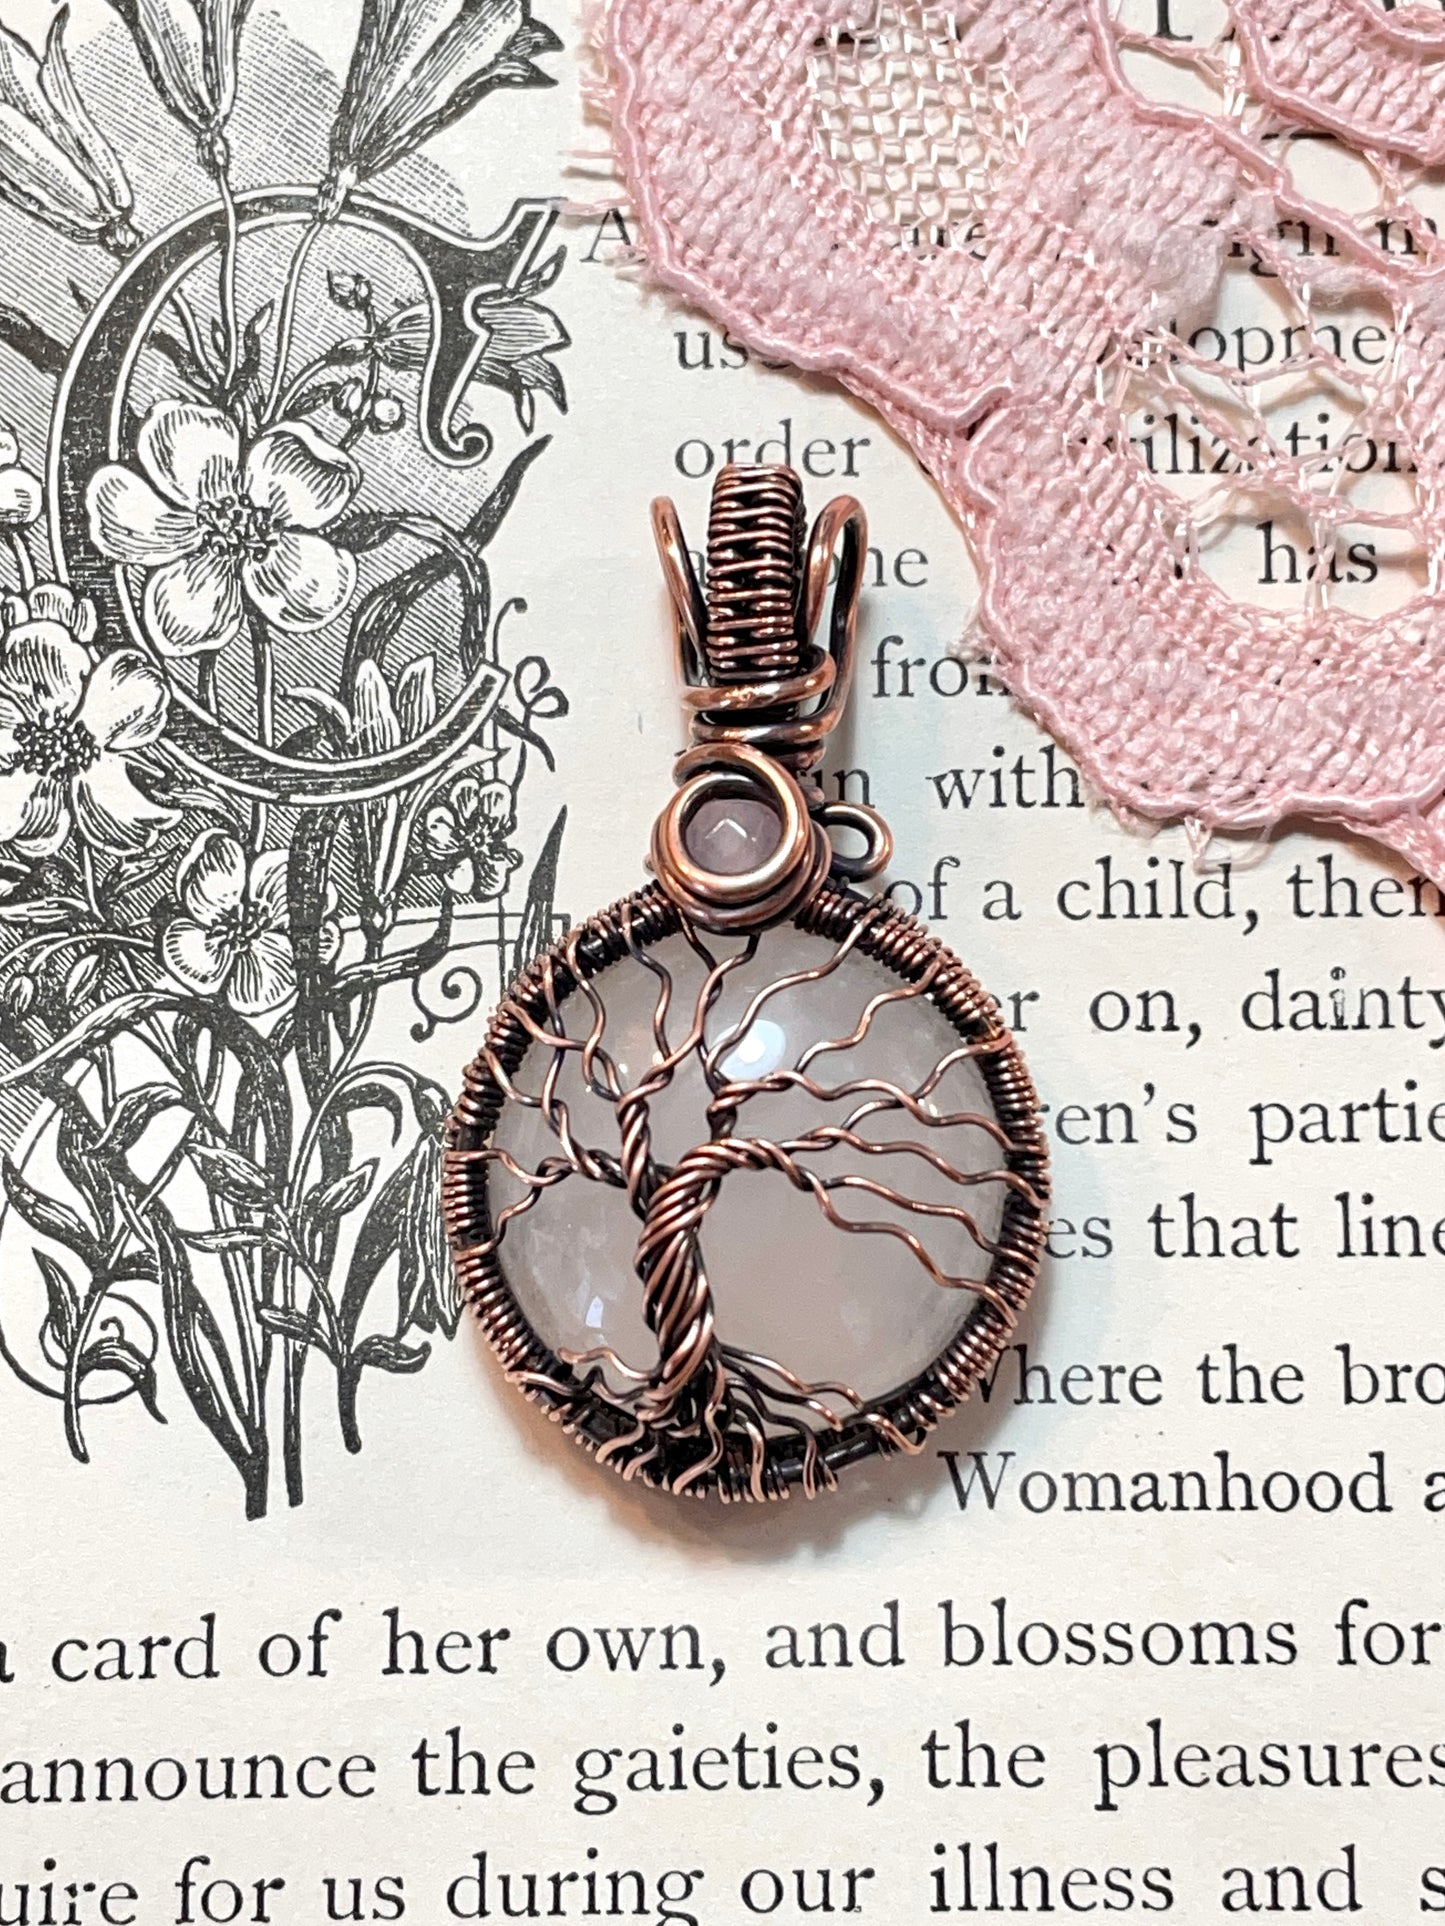 Rose Quartz Tree of Life Mini Pendant in Copper